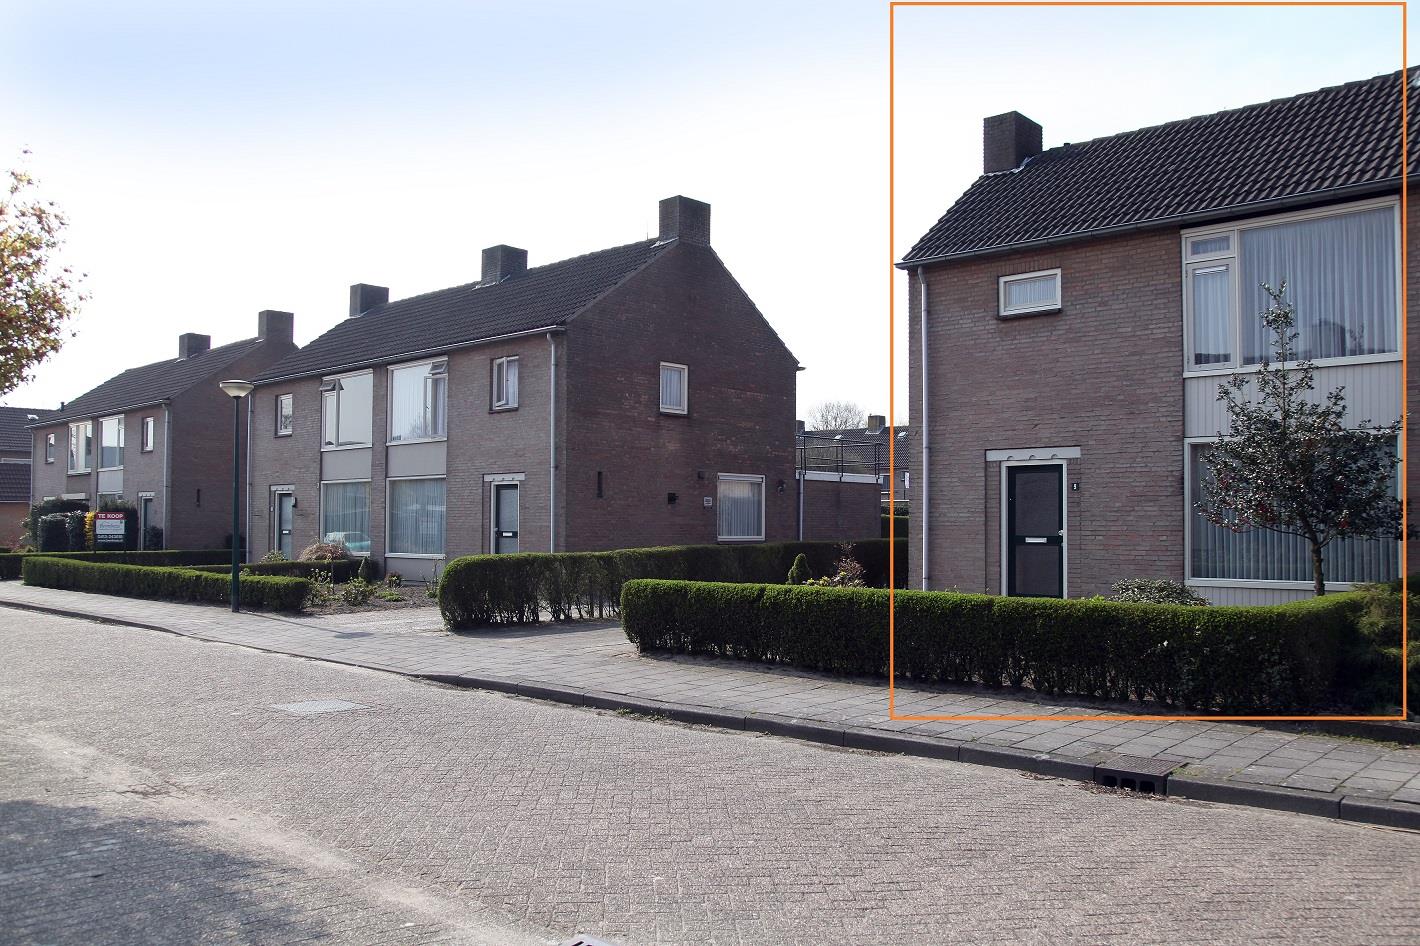 Beatrixstraat 9, 5473 EG Heeswijk Dinther, Nederland